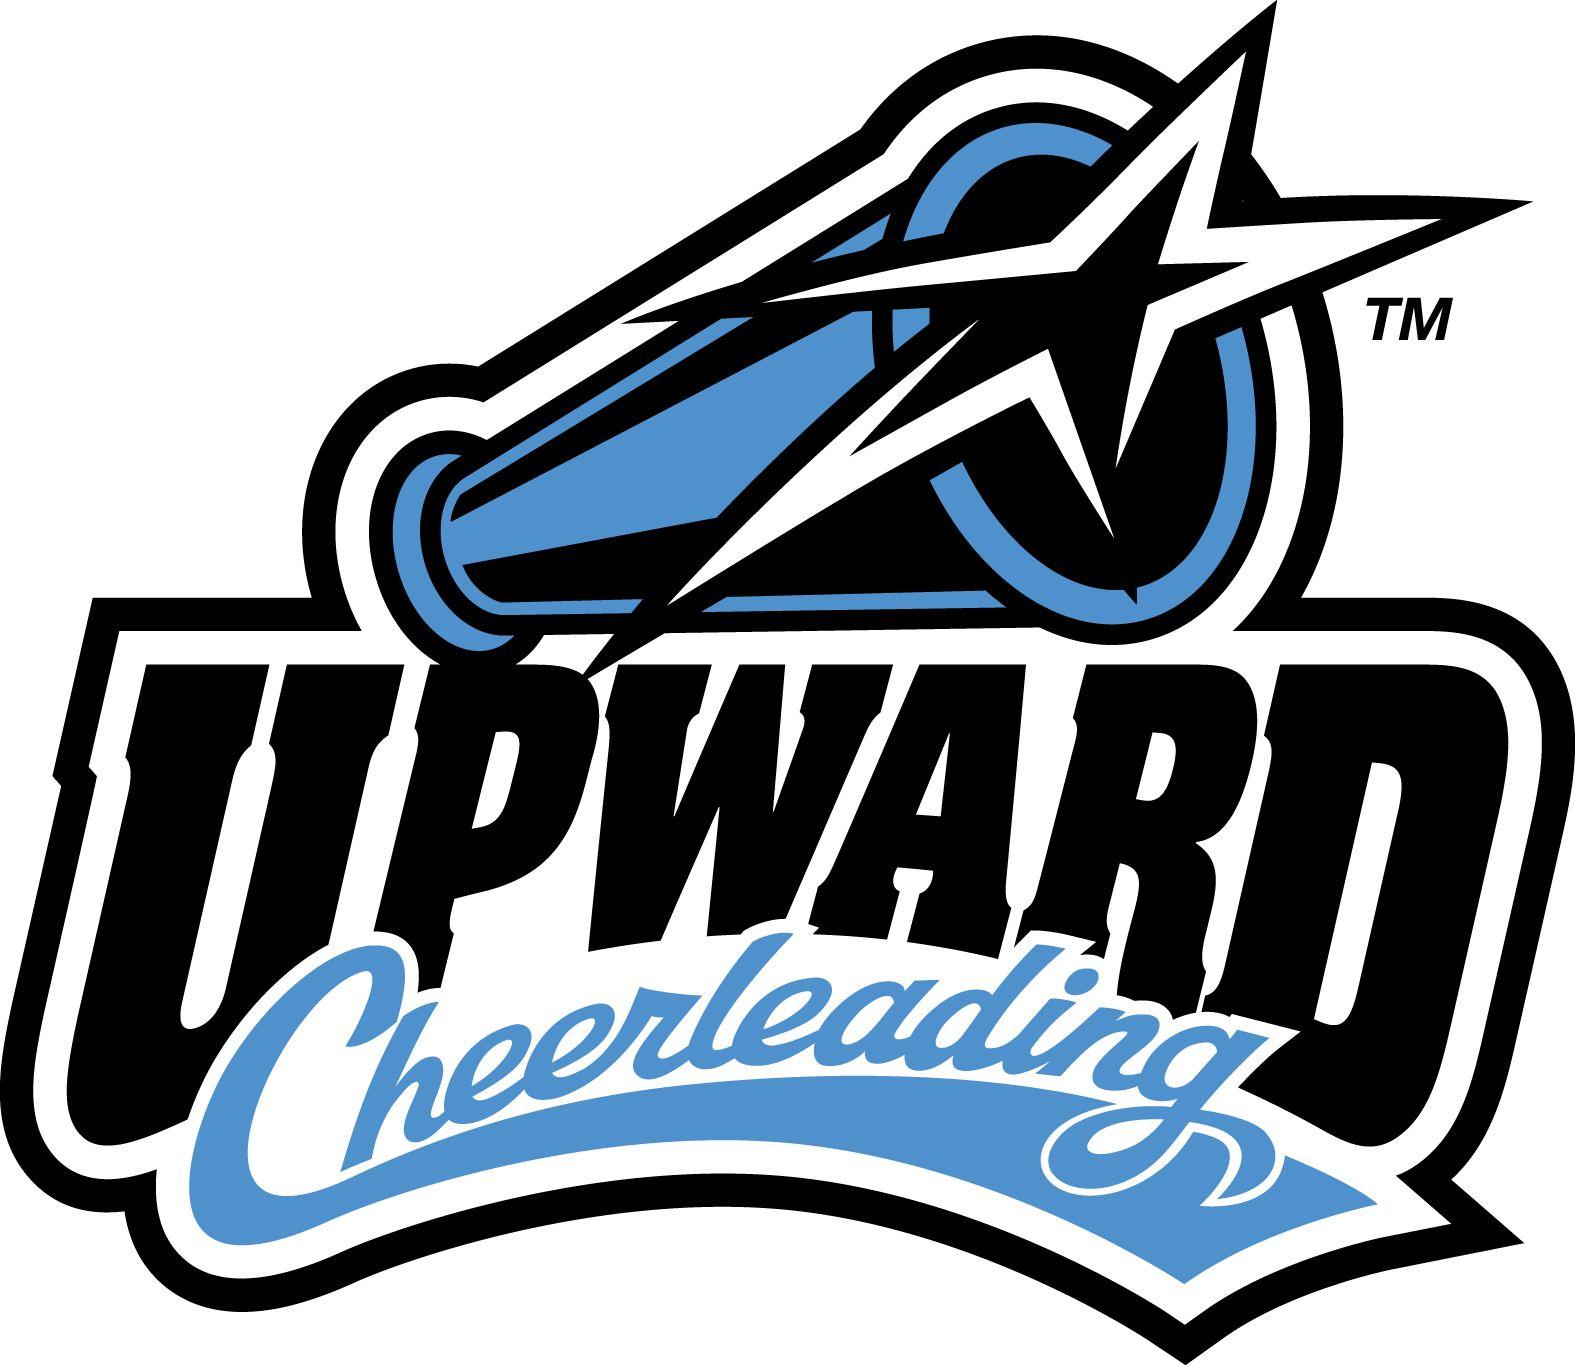 Cheerleading Logo - Upward Cheerleading | Cheer | Cheerleading, Cheer coaches, Logos